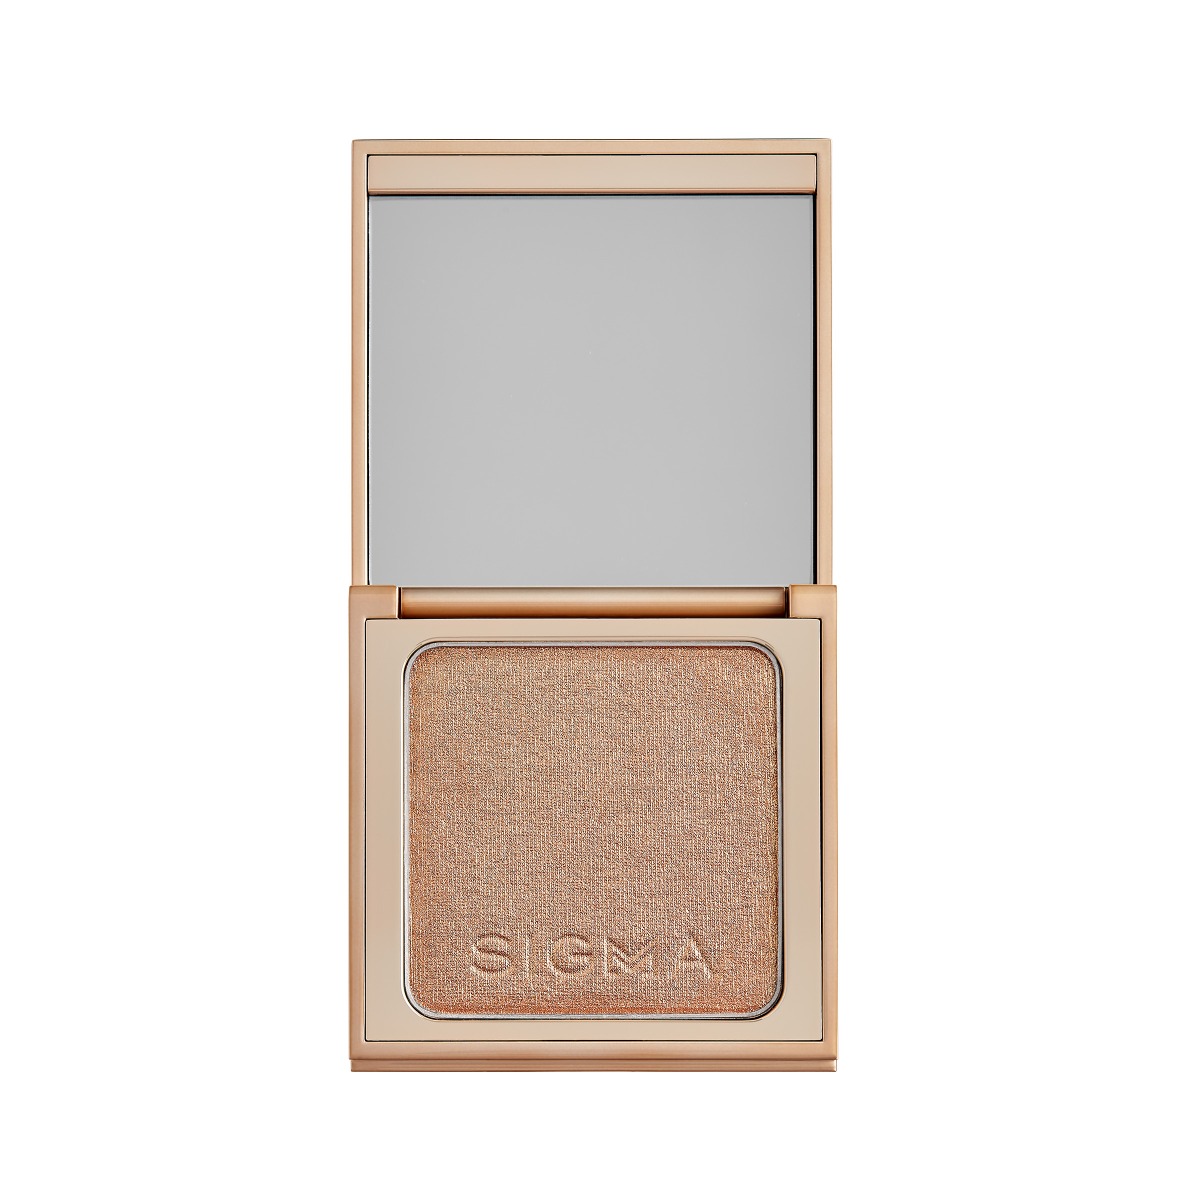 Sigma Beauty Highlighter-Golden Hour